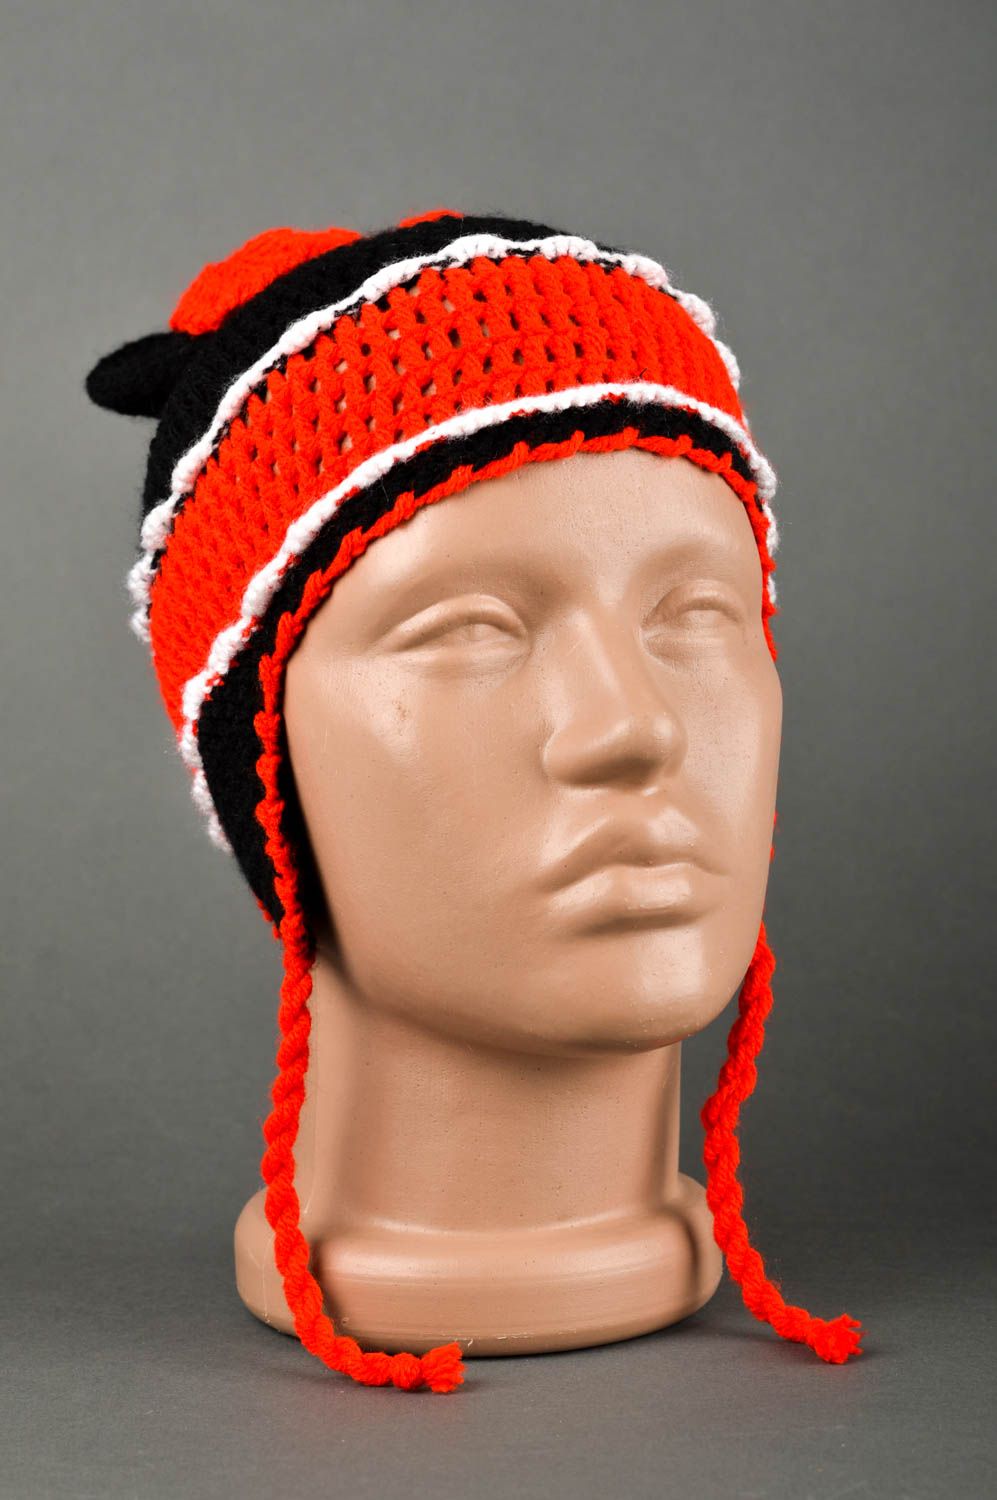 Handmade crochet hat animal hat designer hats for girls gifts for girls photo 2